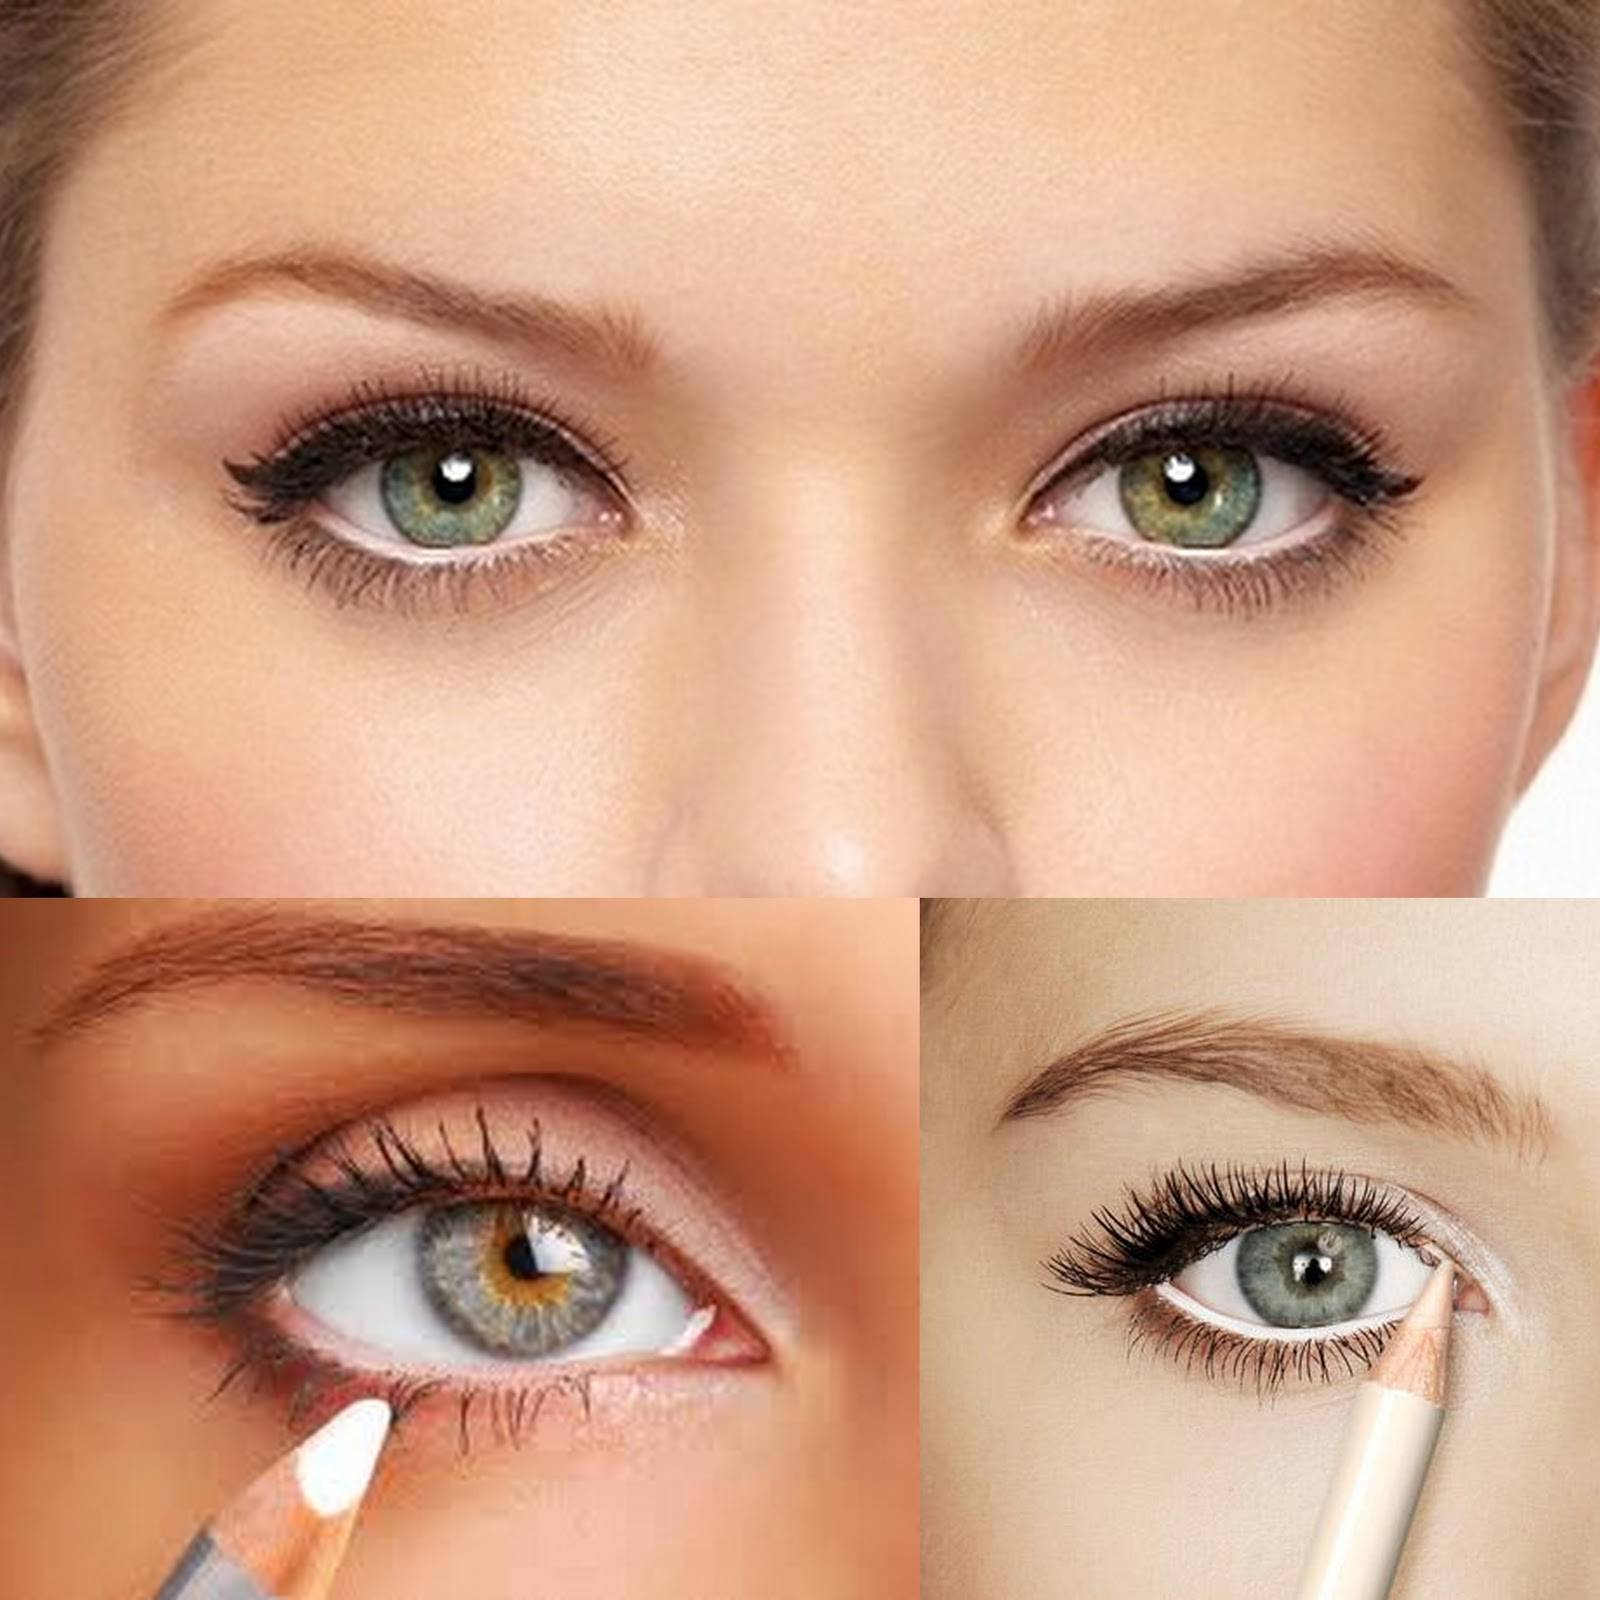 Как визуально увеличить глаза с помощью макияжа: пошаговая инструкция, дневной и вечерний макияж, для голубых, серых, зеленых, карих глаз